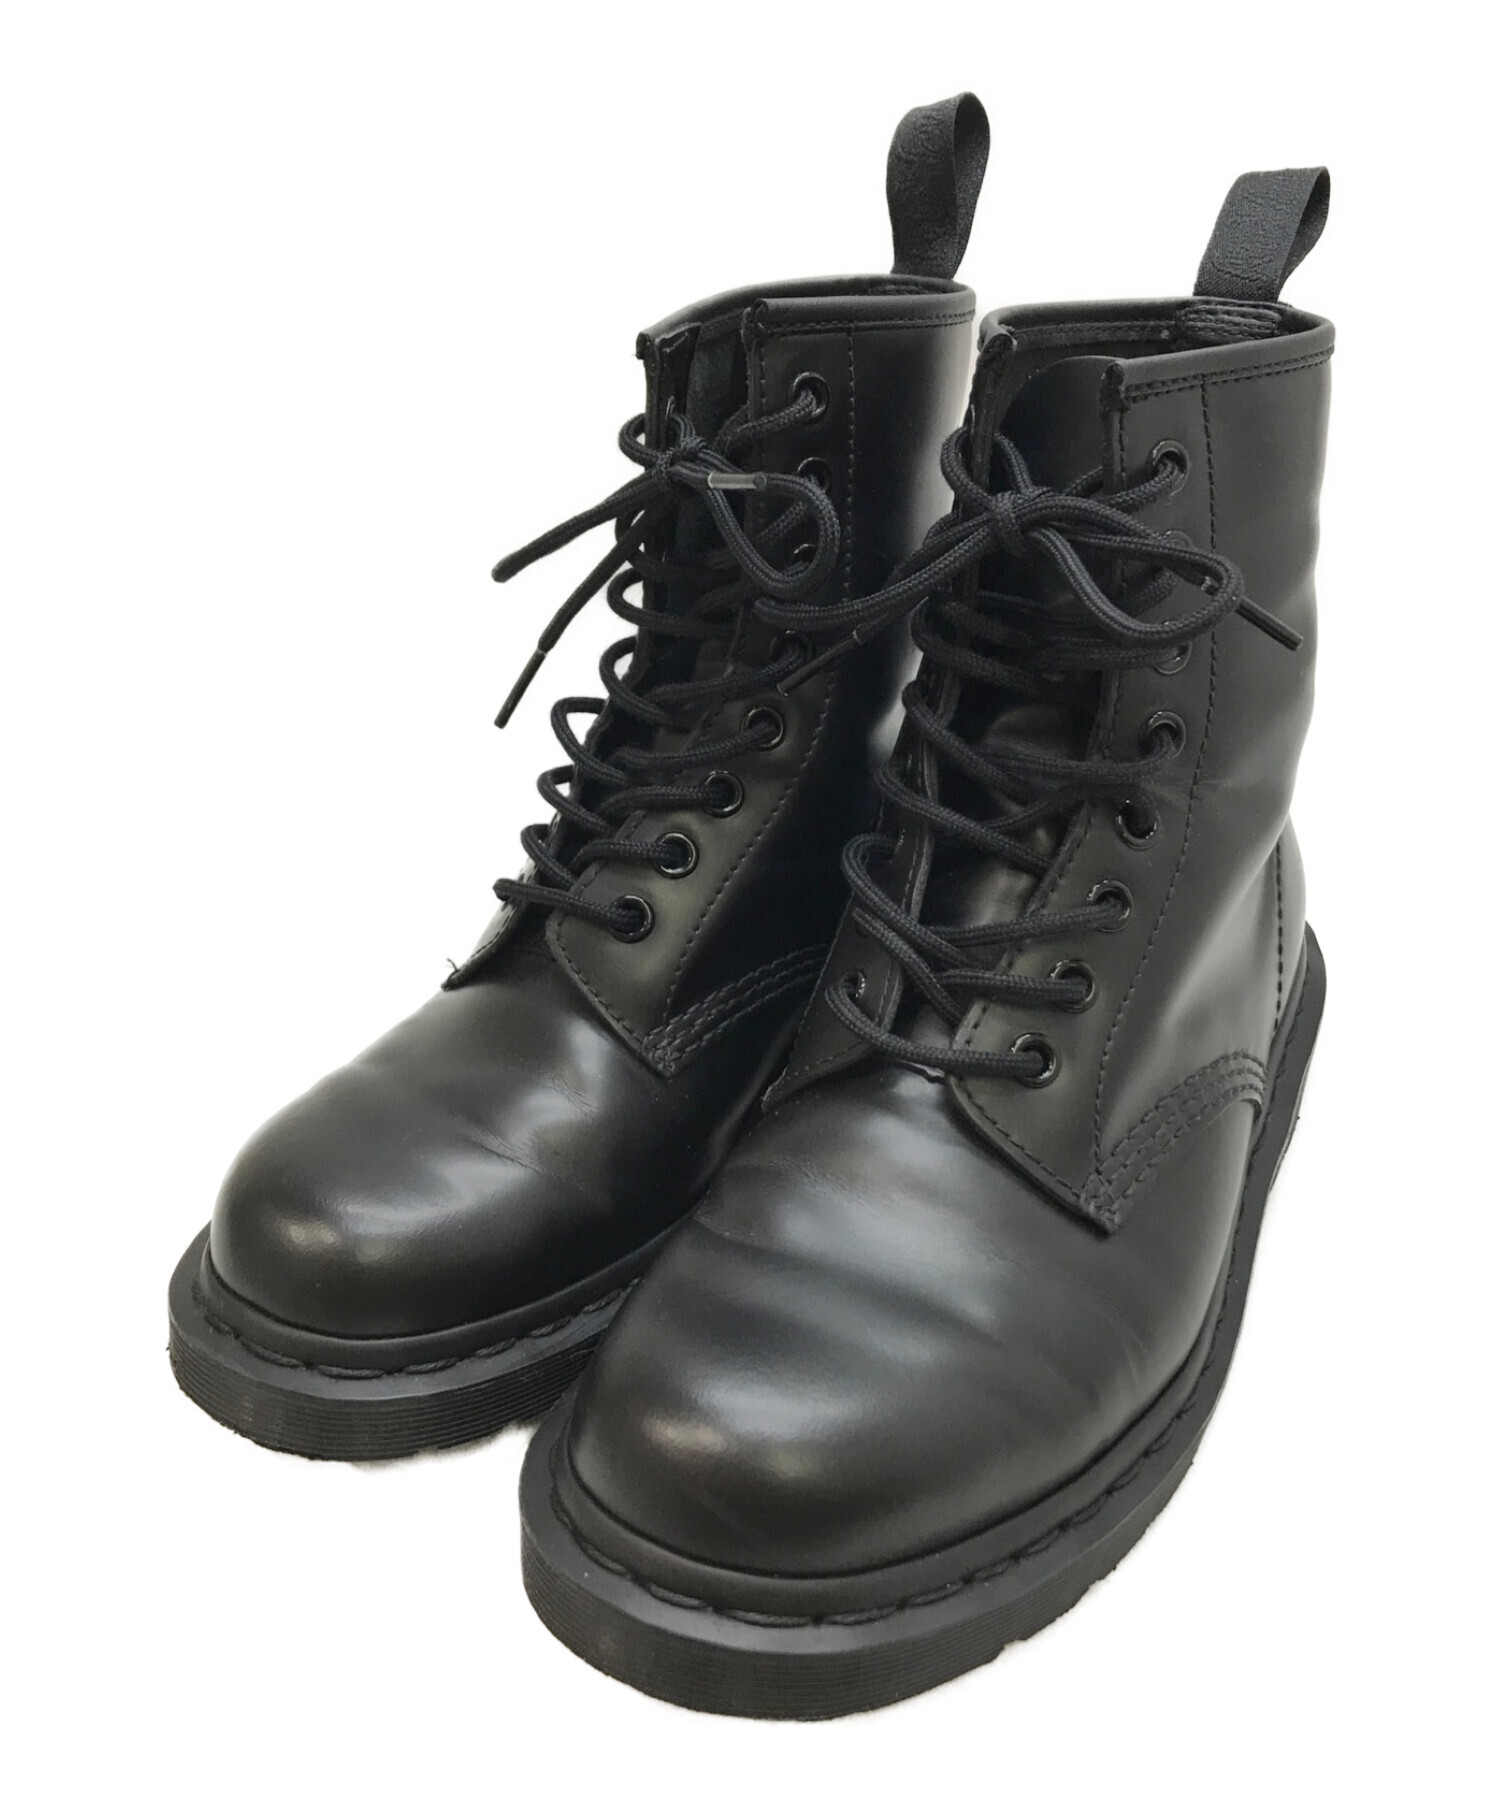 ドクターマーチン 1460 MONO black - 靴